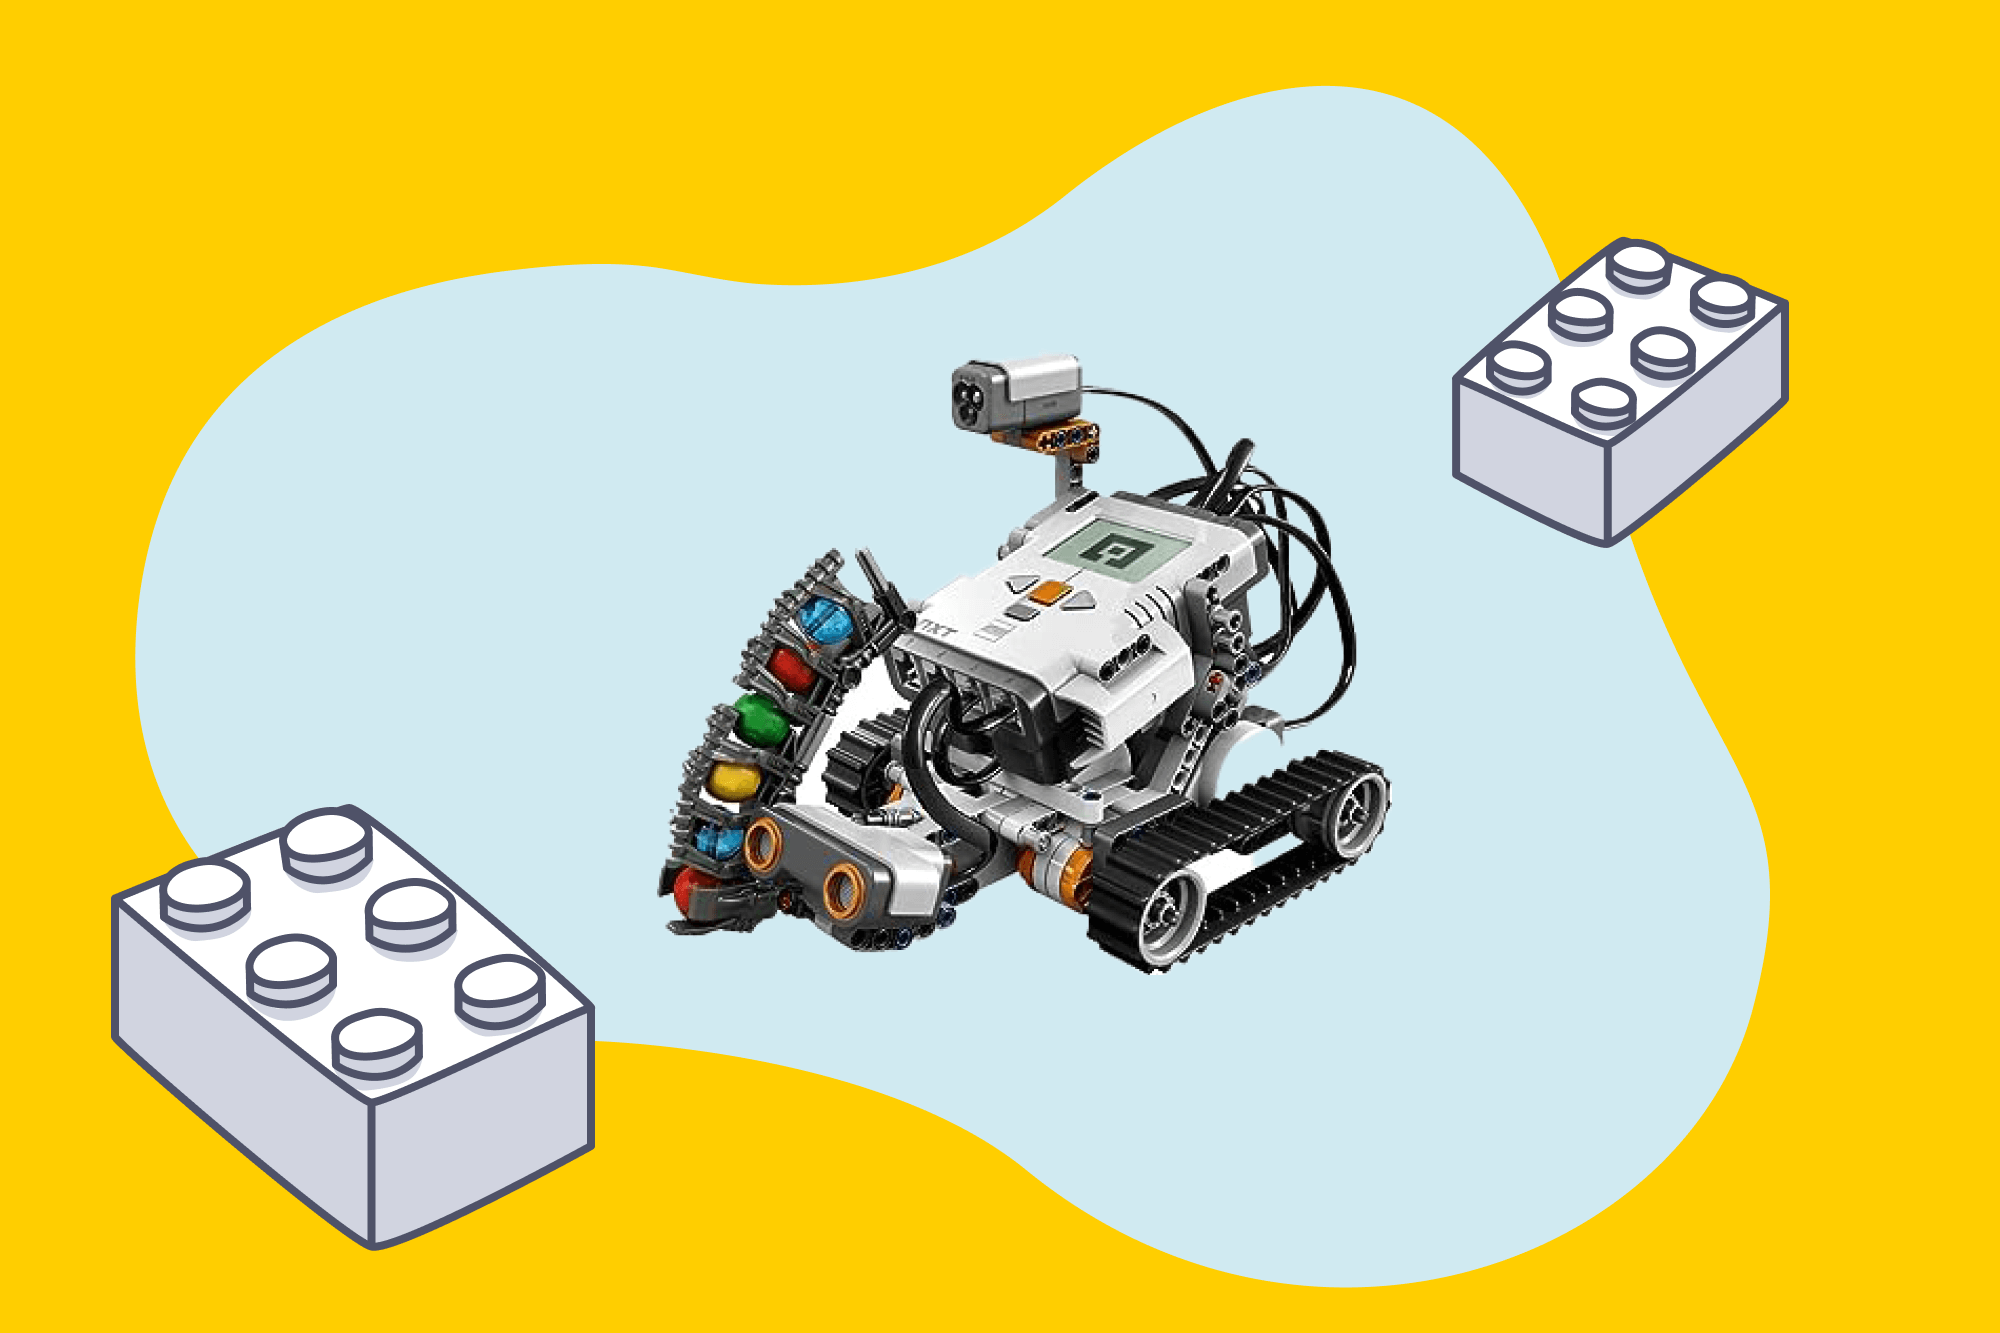 Teaser LEGO EV3 Roboter, gelber Hintergrund, hellblaue organische Form, umgeben von Illustrationen von LEGO